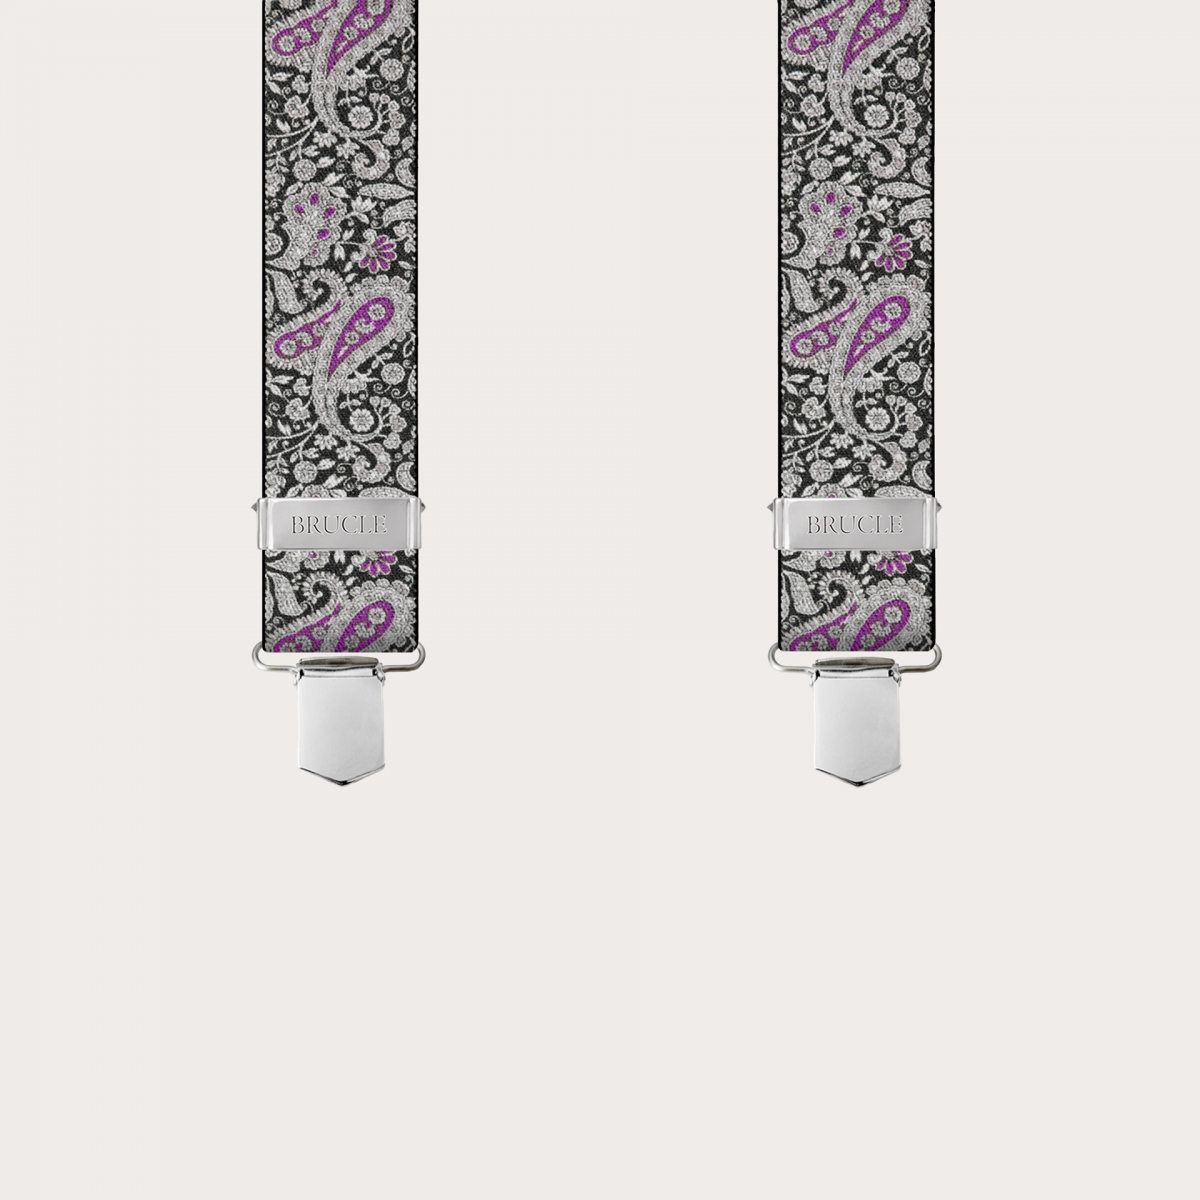 BRUCLE X-form Hosenträger mit Clips in schwarz-violettes Kaschmirmuster